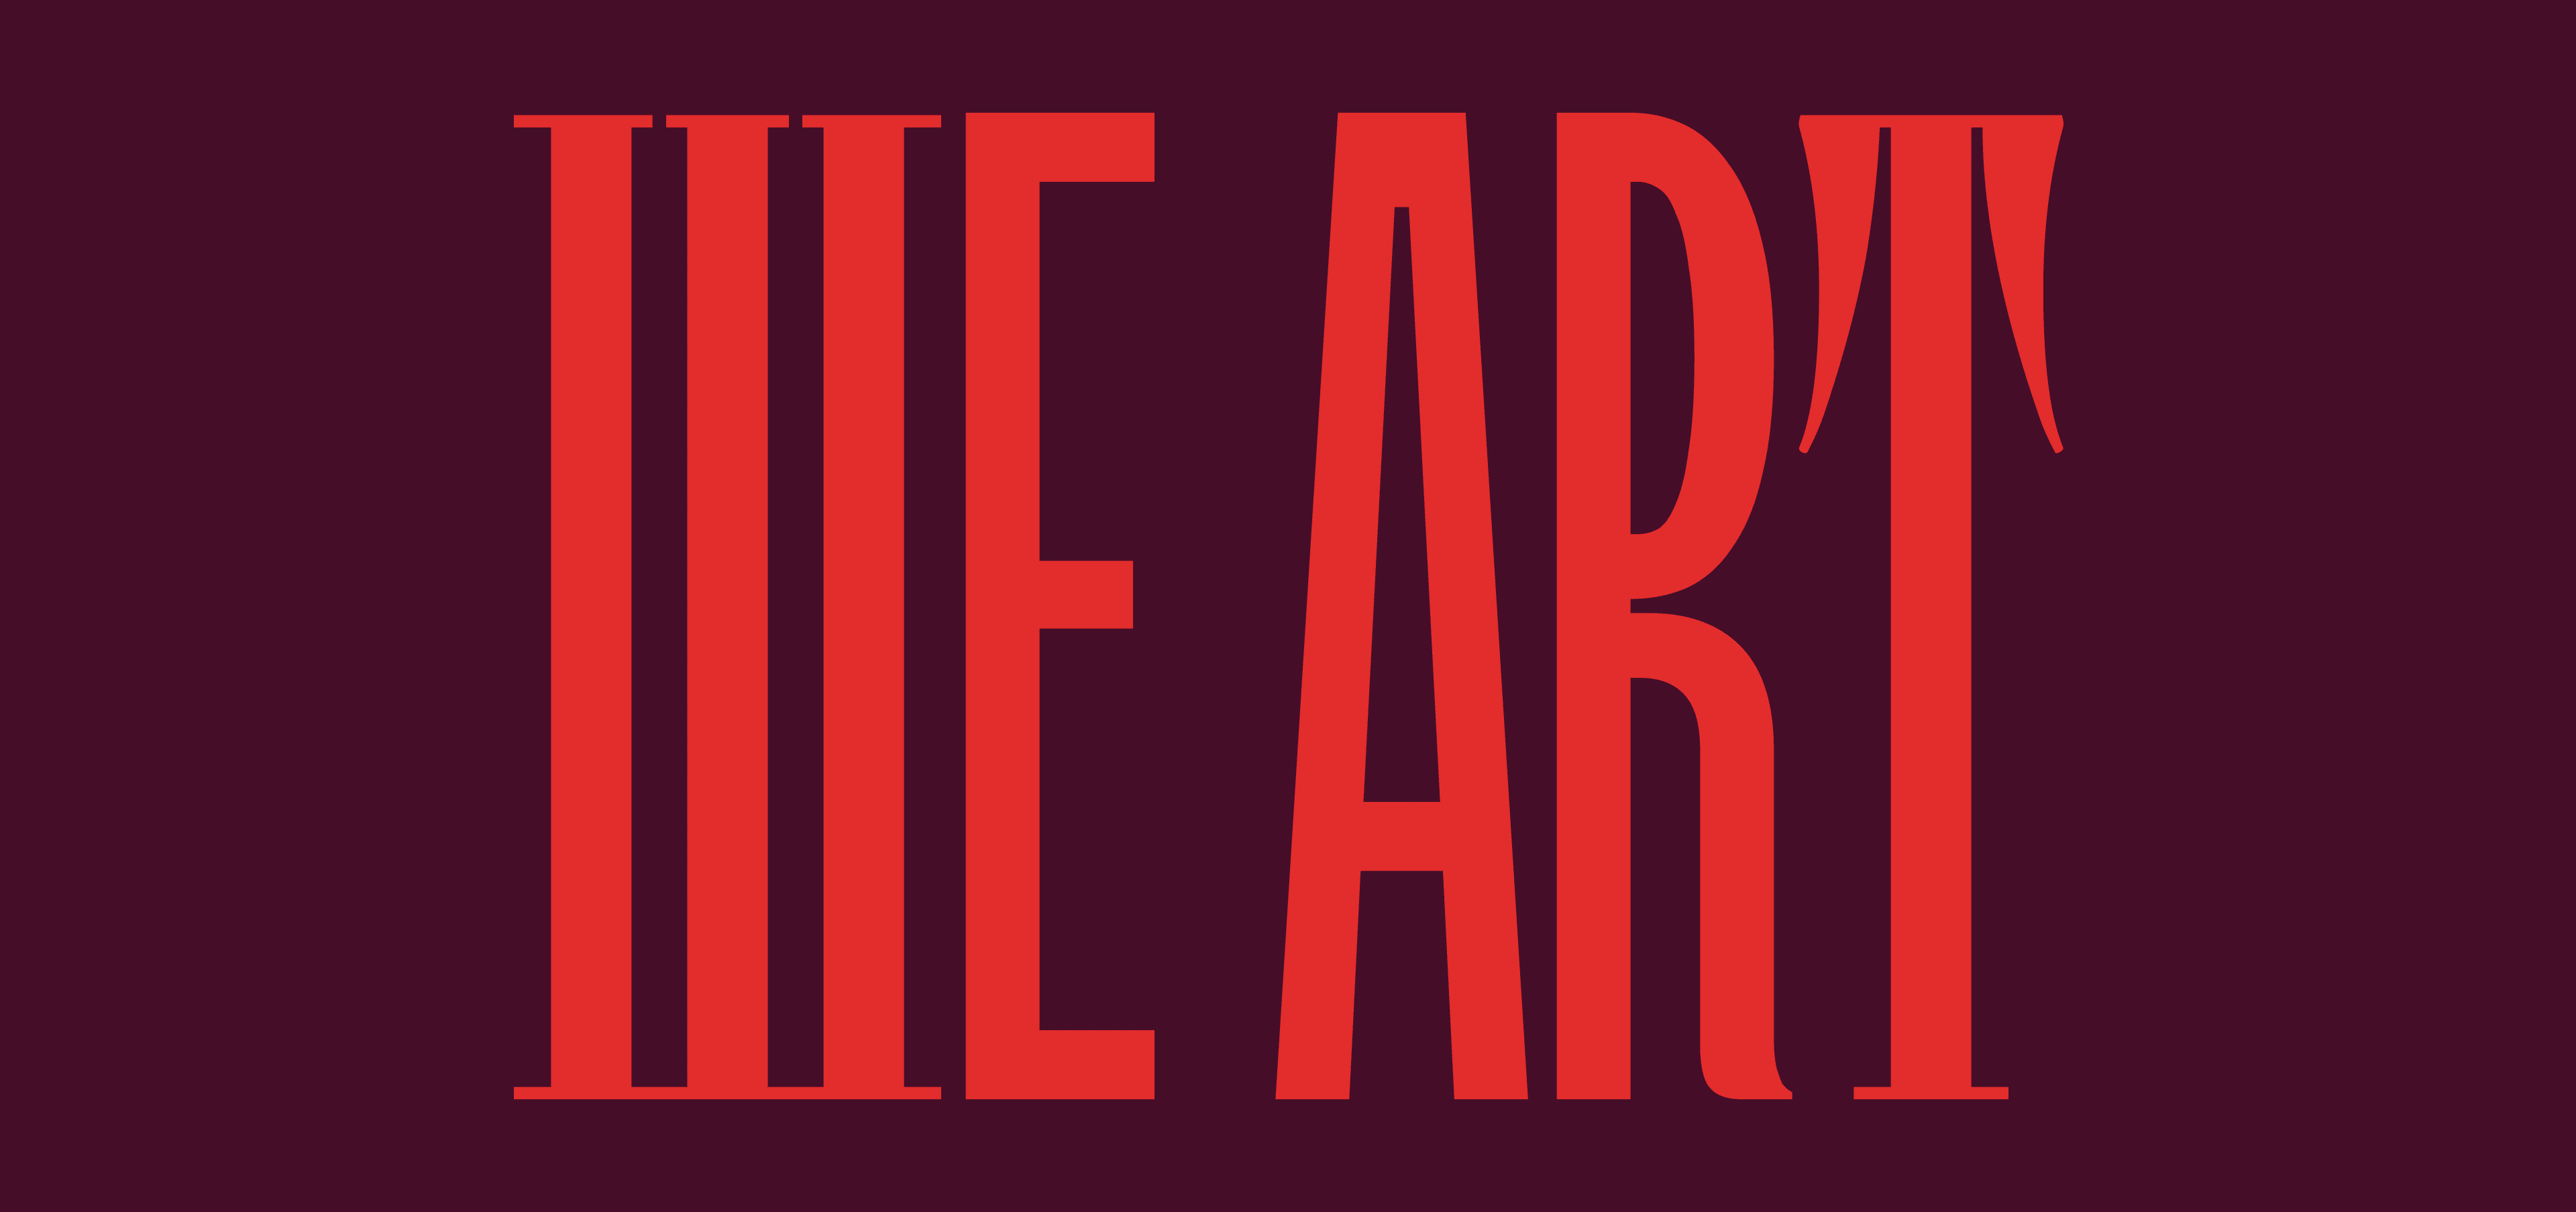 We Art logo red